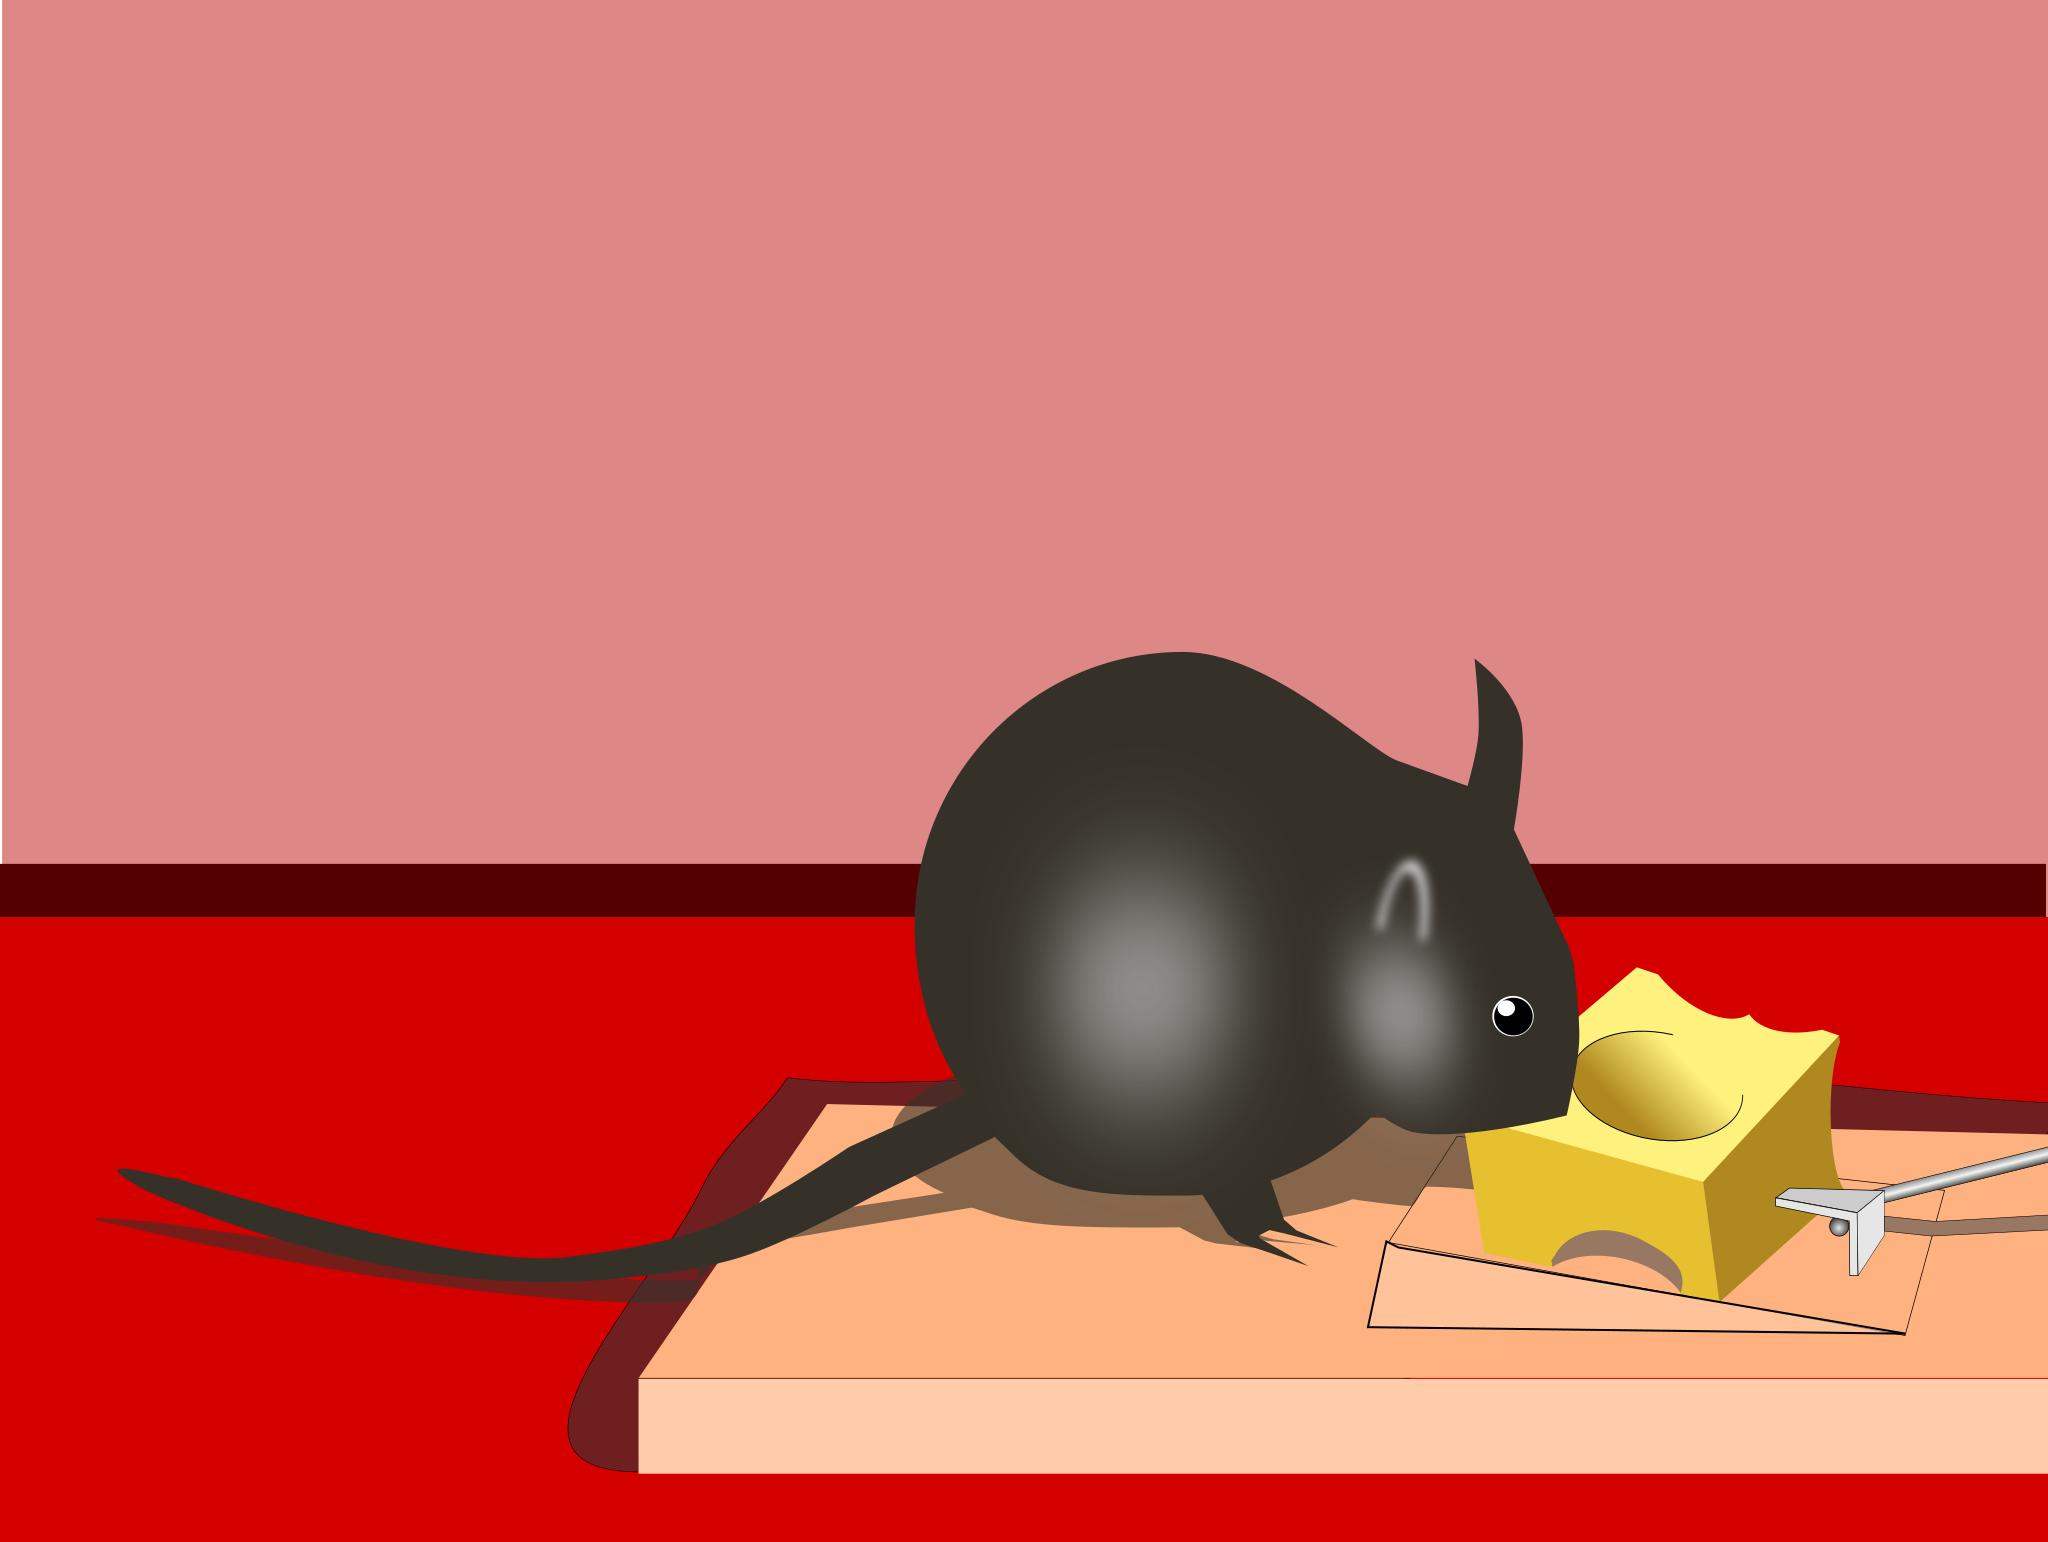 Мышь и бесплатный сыр